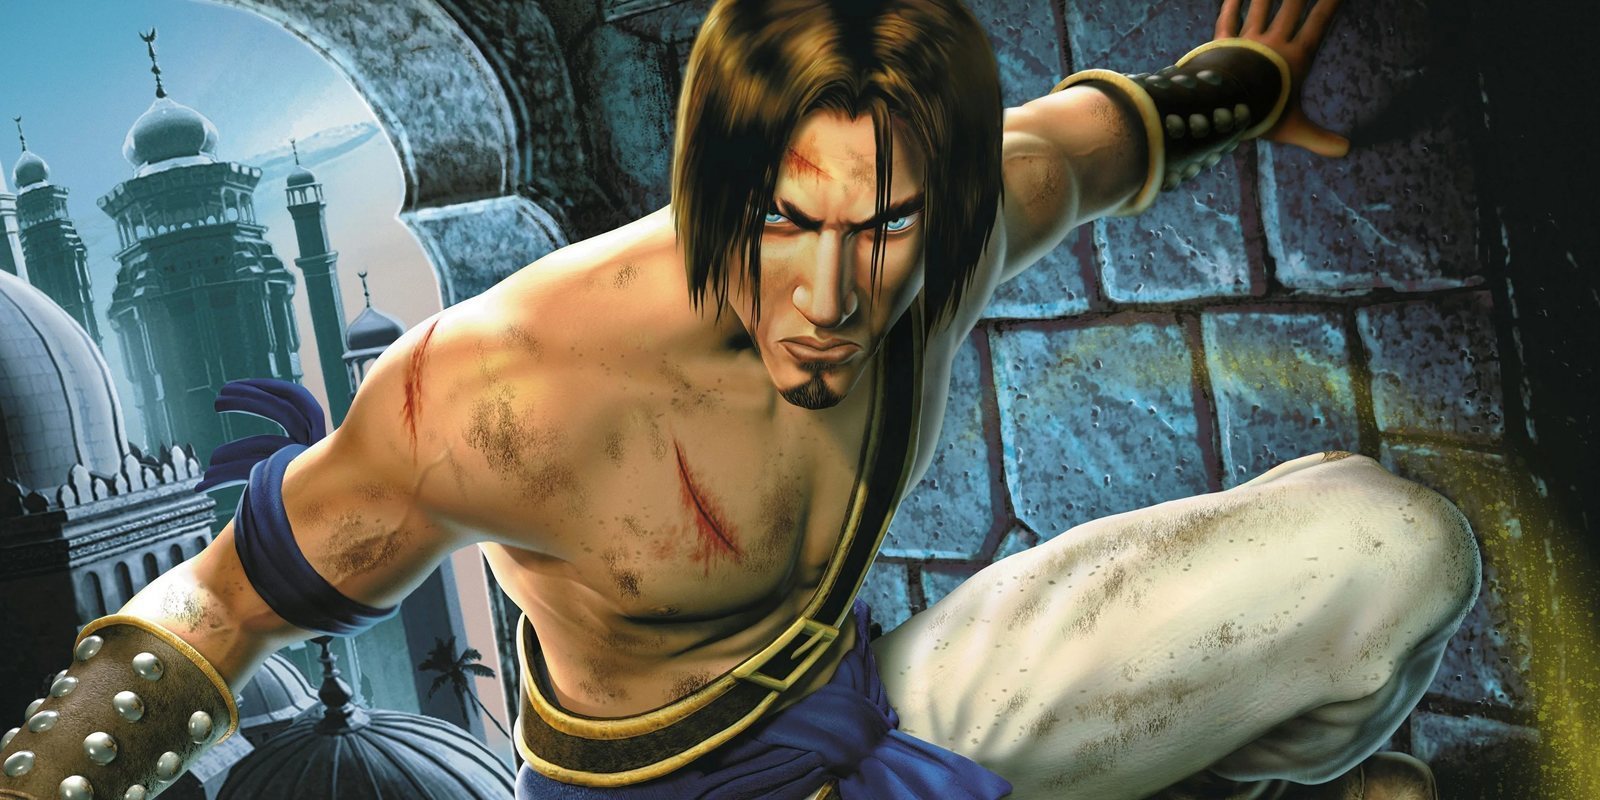 El creador de 'Prince of Persia' quiere volver a retomar la saga